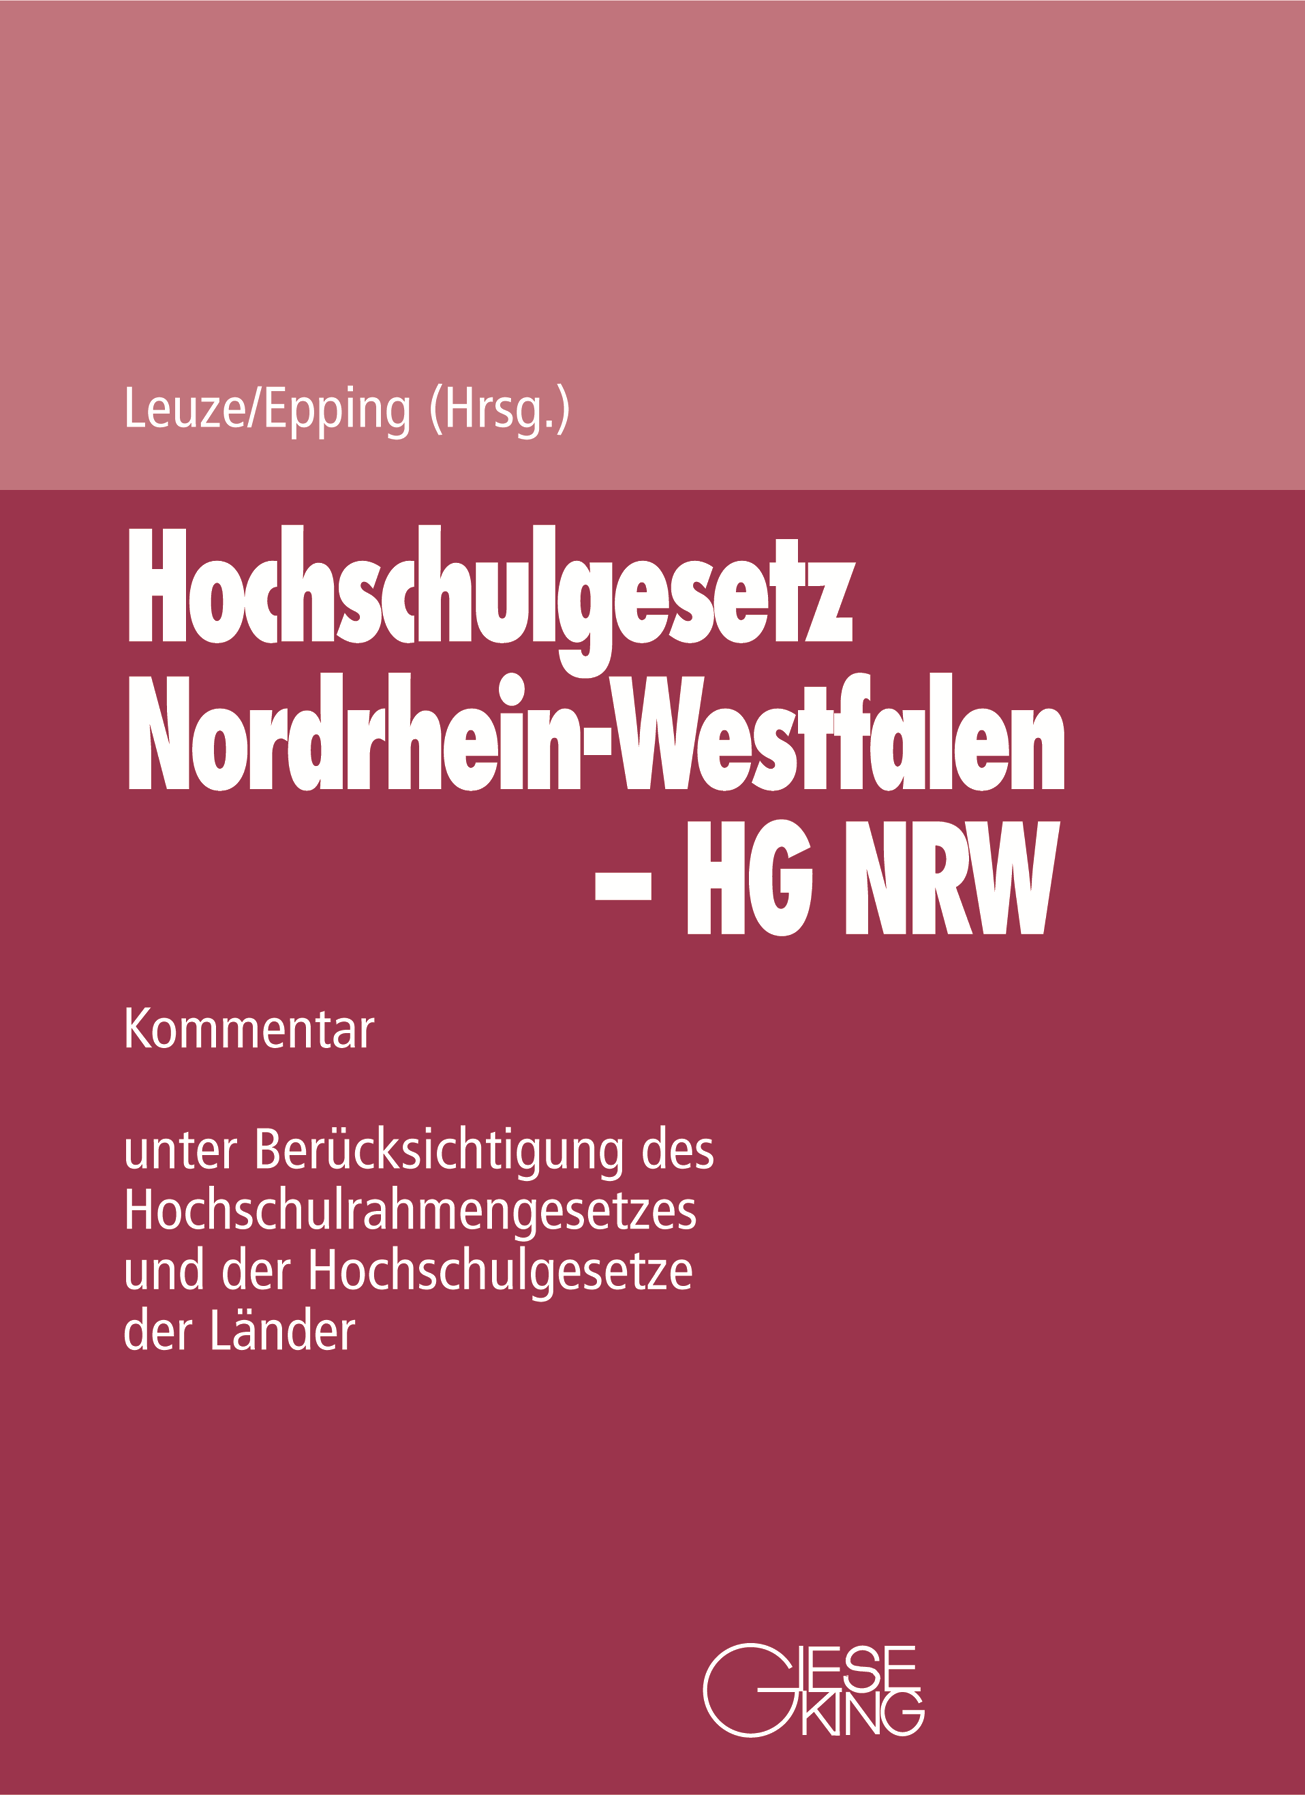 Abbildung: Gesetz über die Hochschulen des Landes Nordrhein-Westfalen